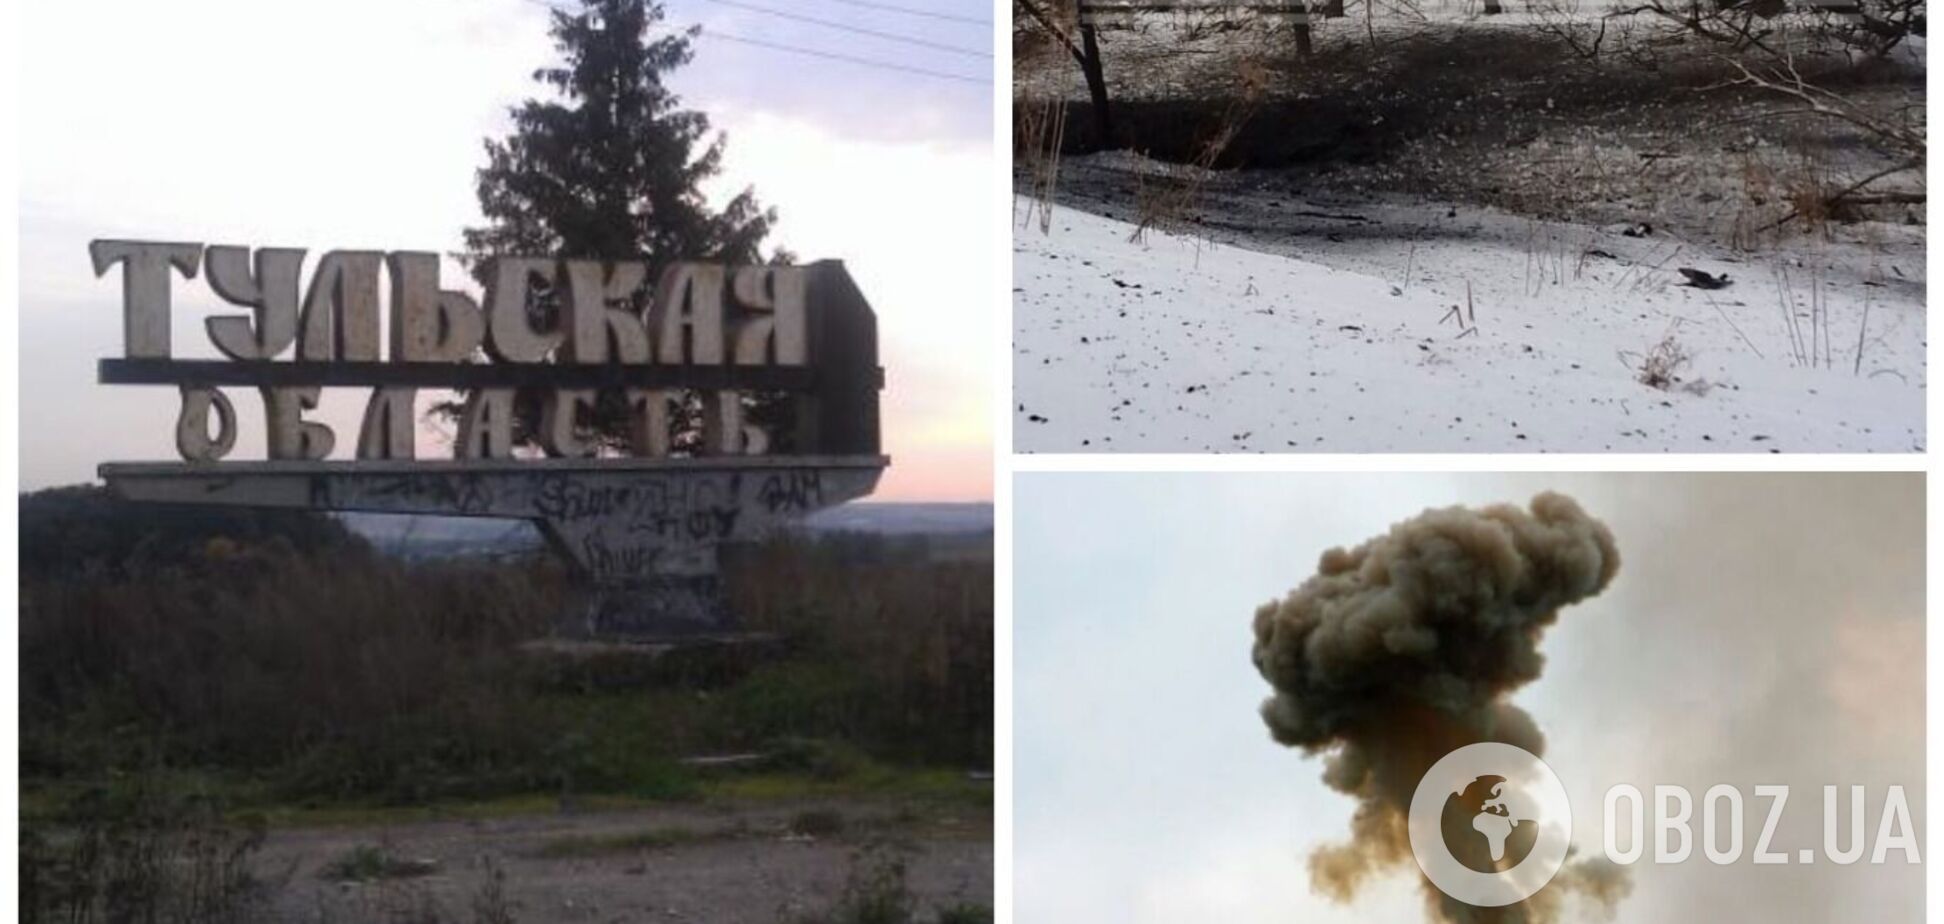 Затряслись дома: в Тульской области РФ прогремел мощный взрыв, возле воронки все засыпало пеплом. Видео